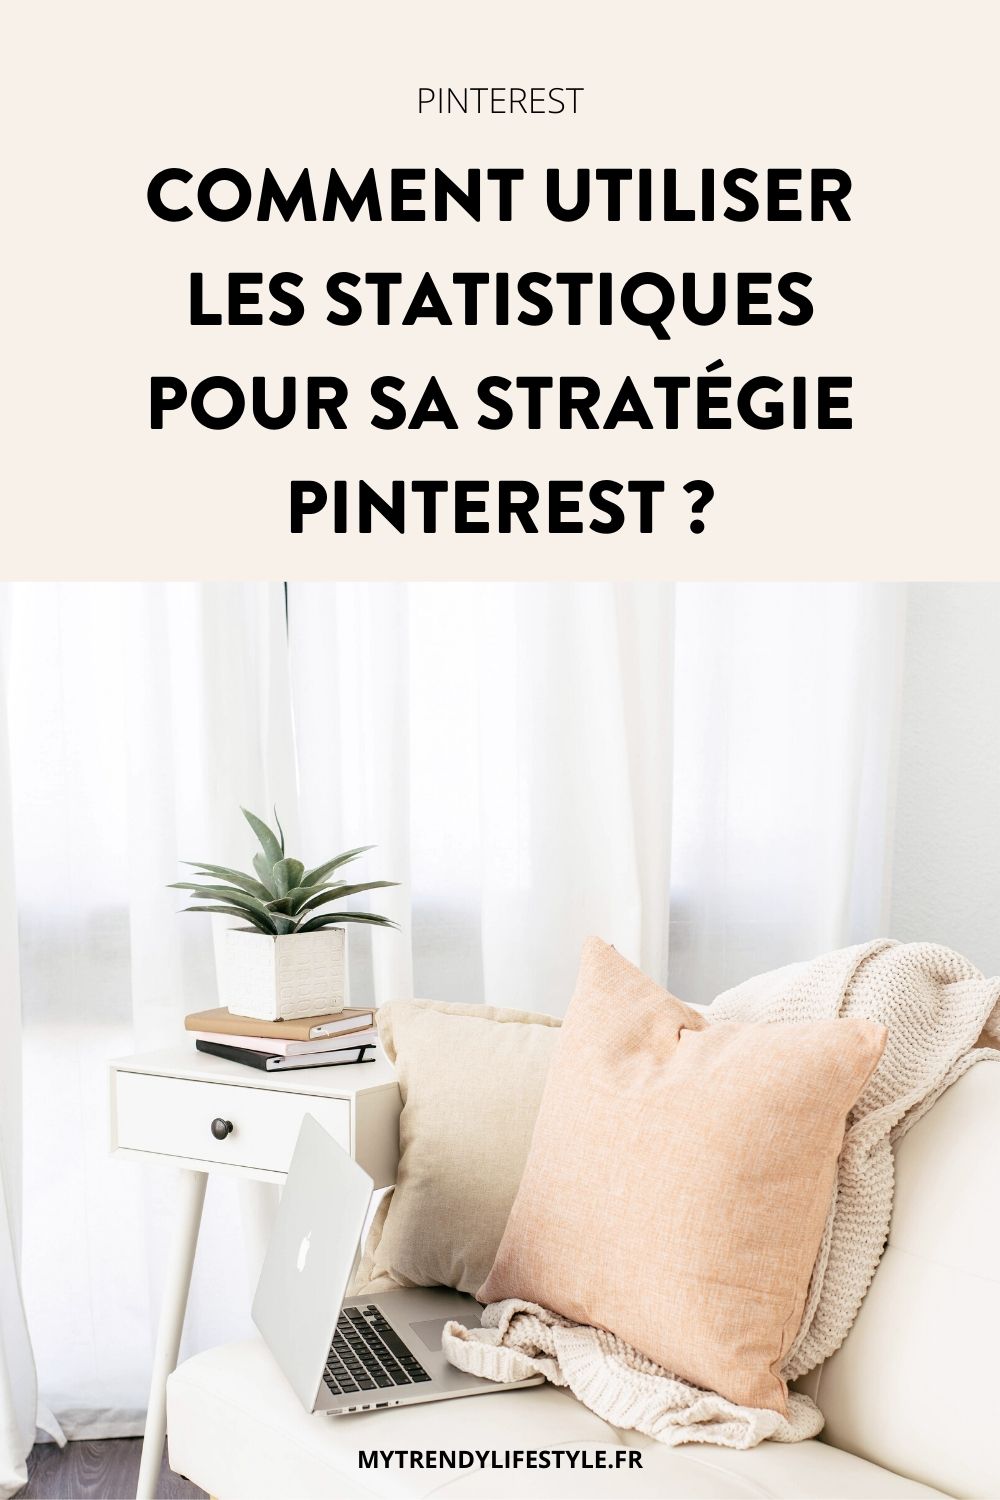 Comment utiliser les statistiques pour optimiser sa stratégie sur Pinterest ? Découvrez dans cet article les éléments à analyser pour développer votre trafic.